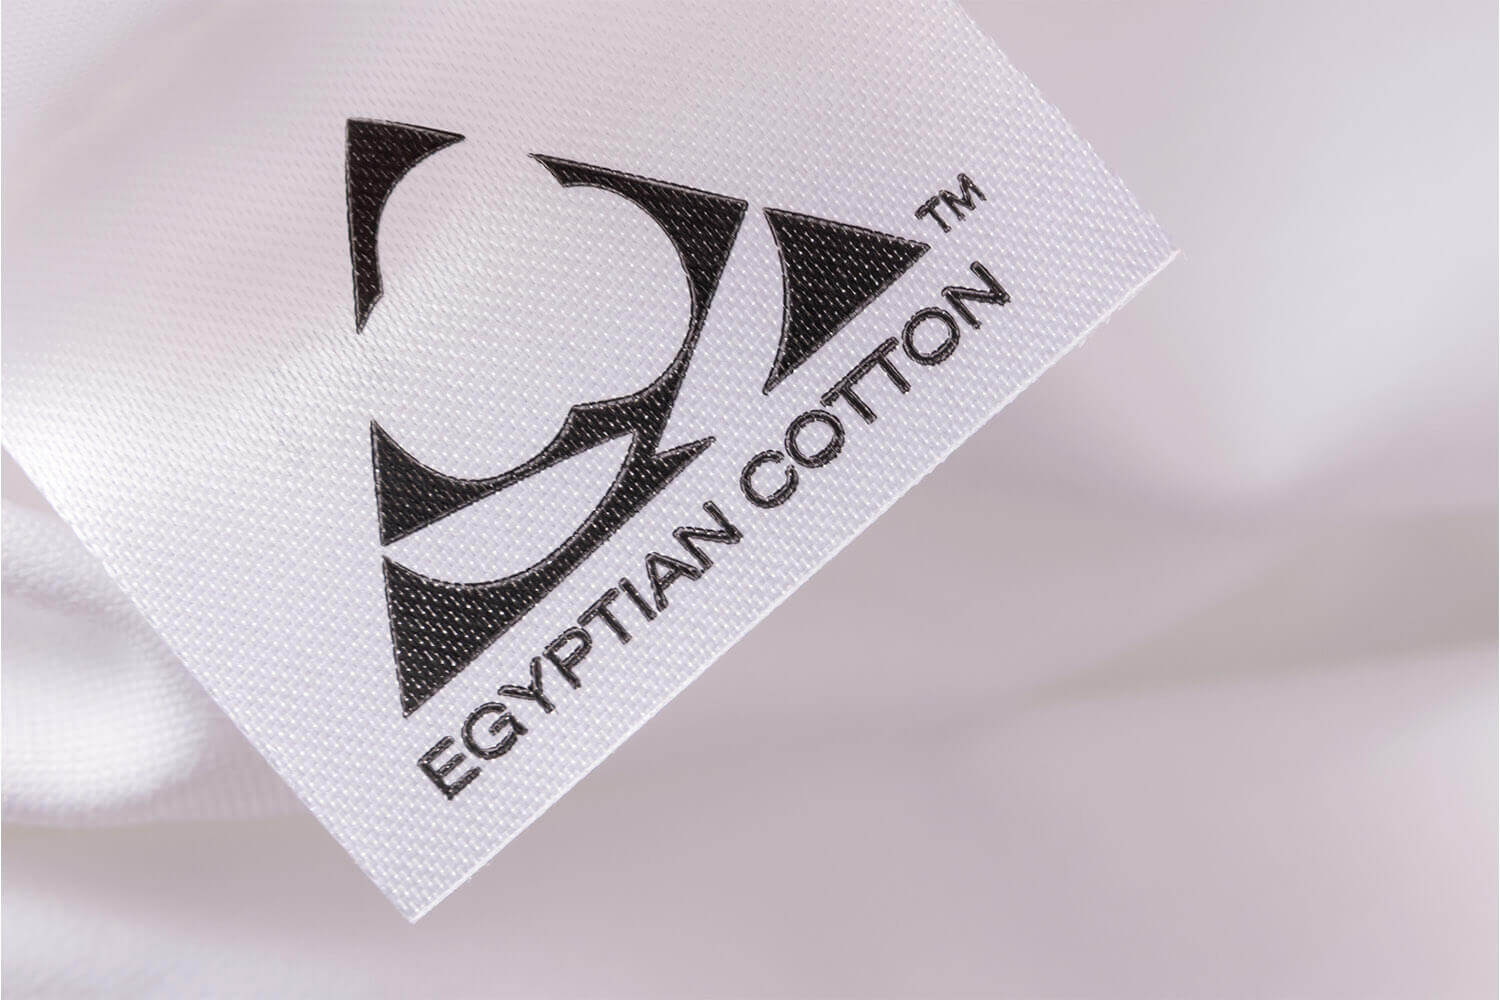 EGYPTIAN COTTON trademark tag on Douglas Egyptian Cotton Sheets